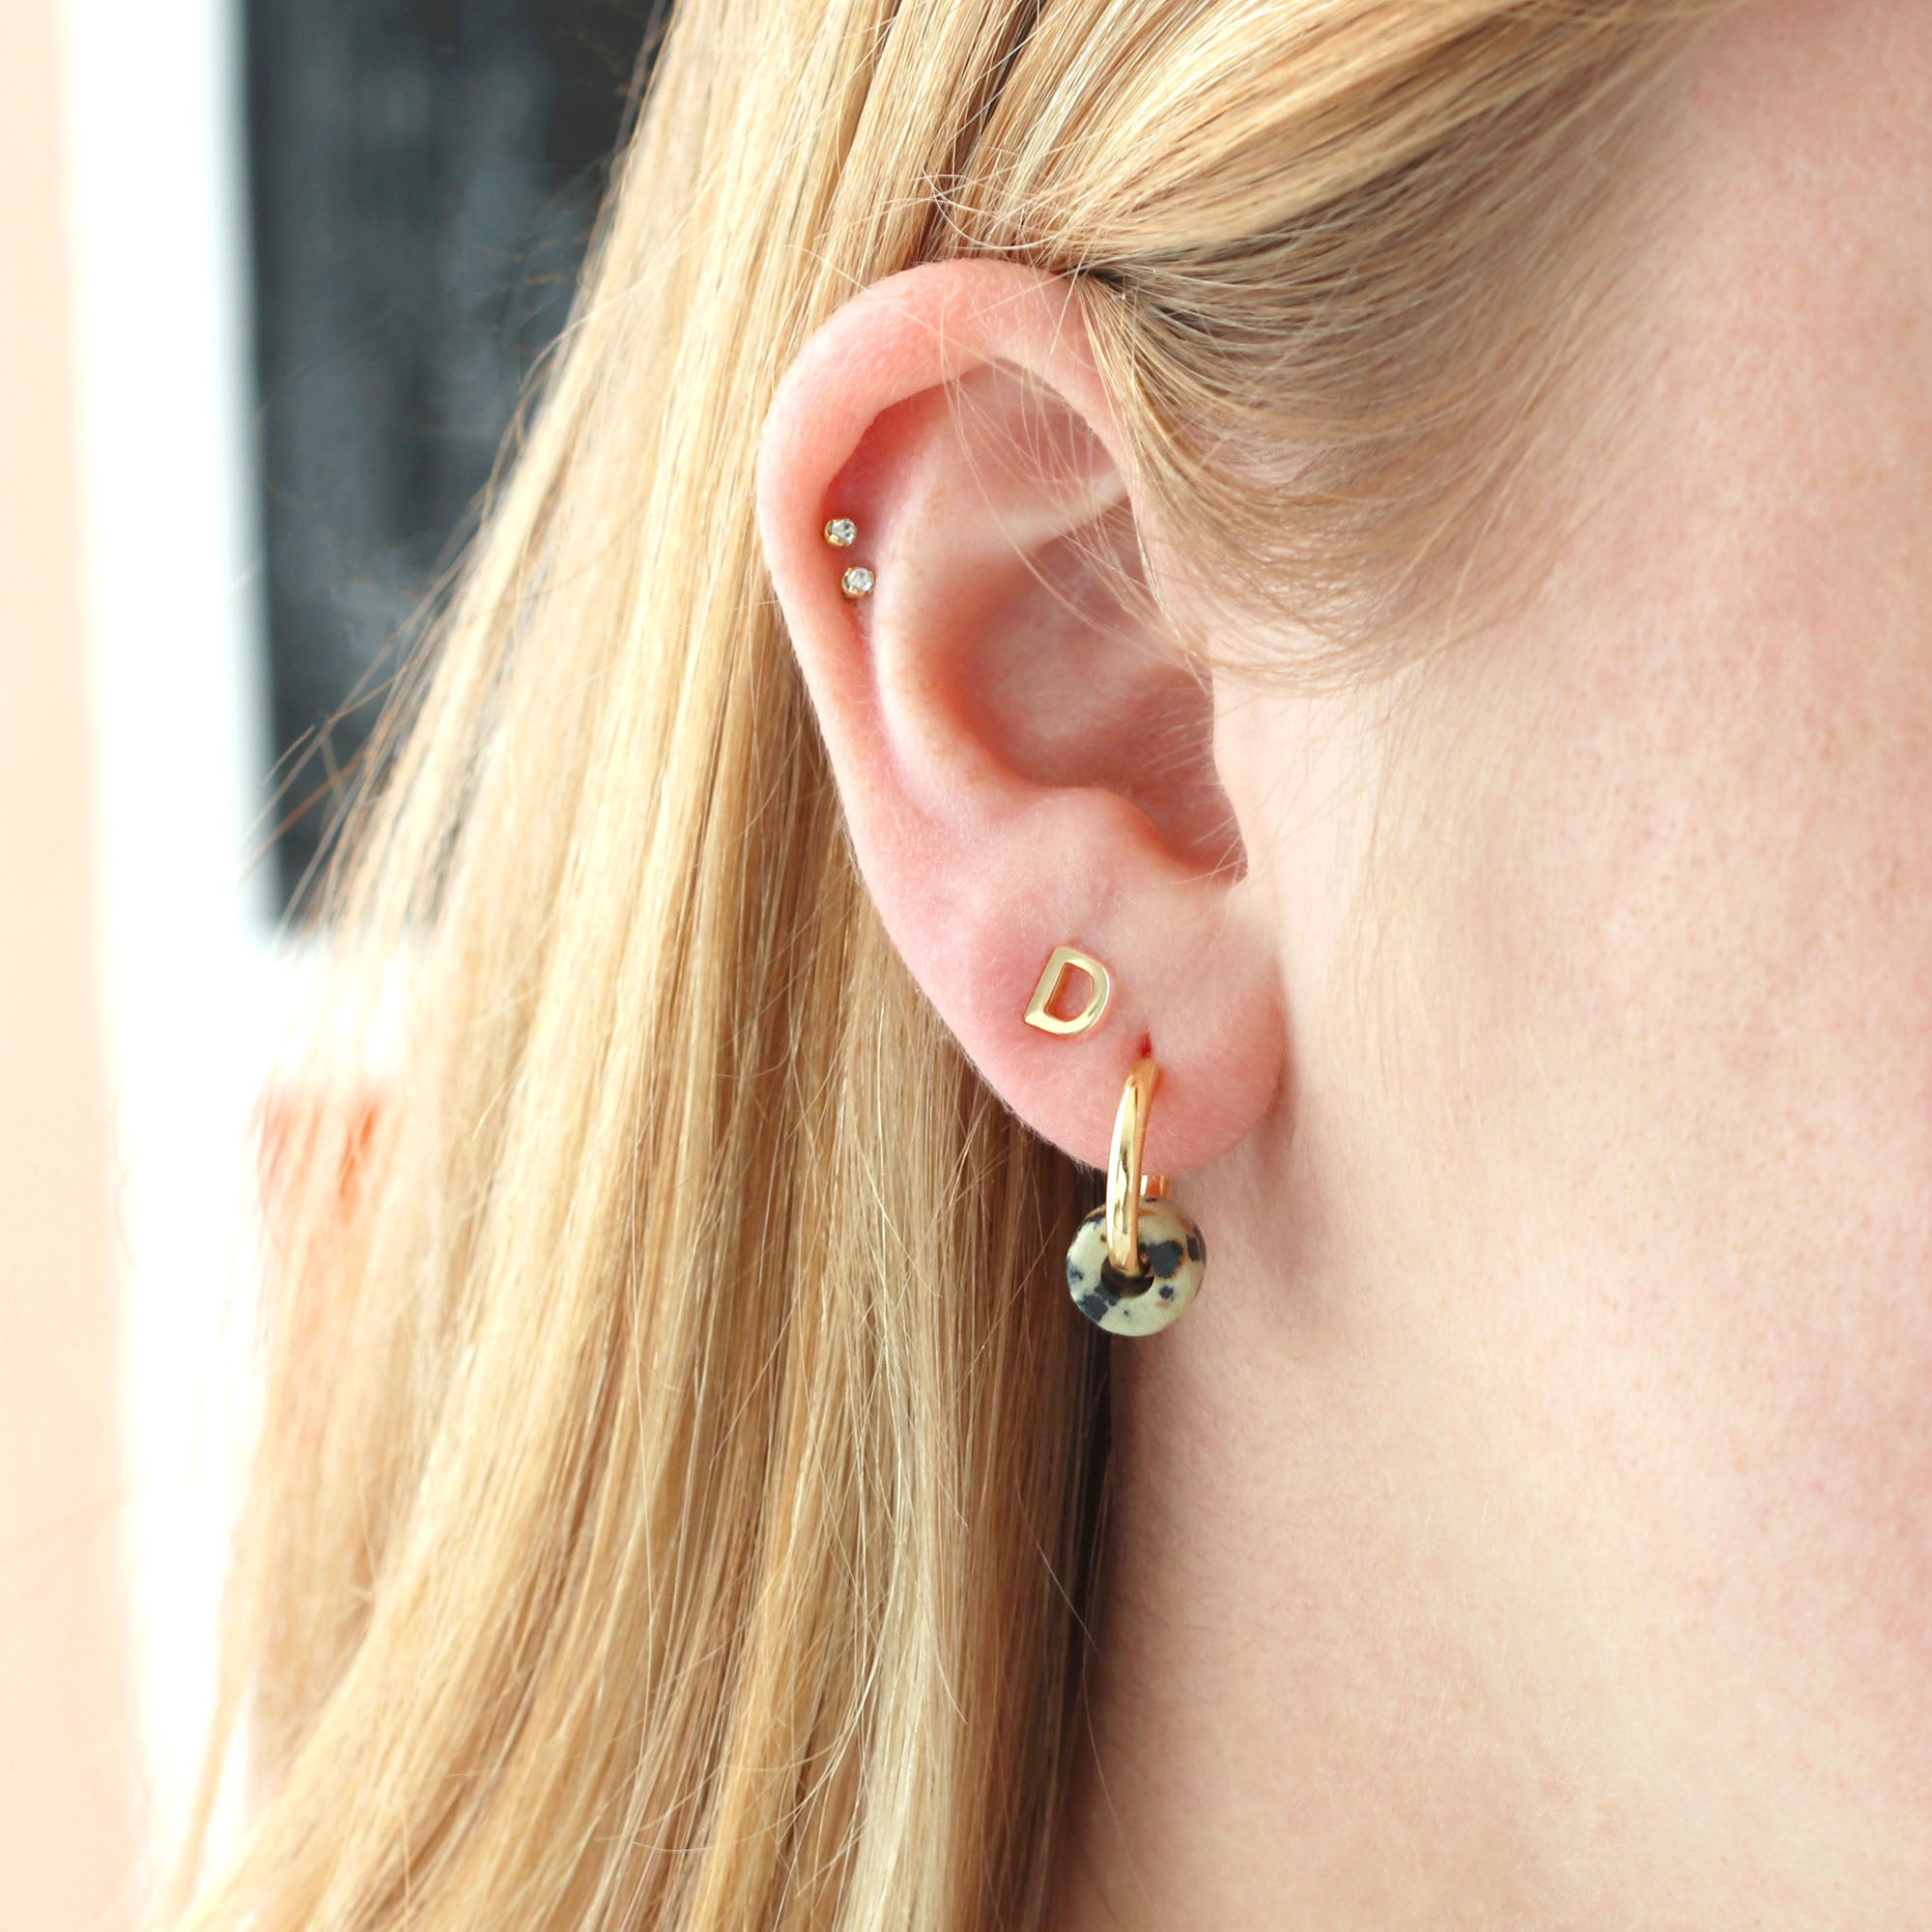 Huggie Hoop Earrings with Gemstone Fun Pack